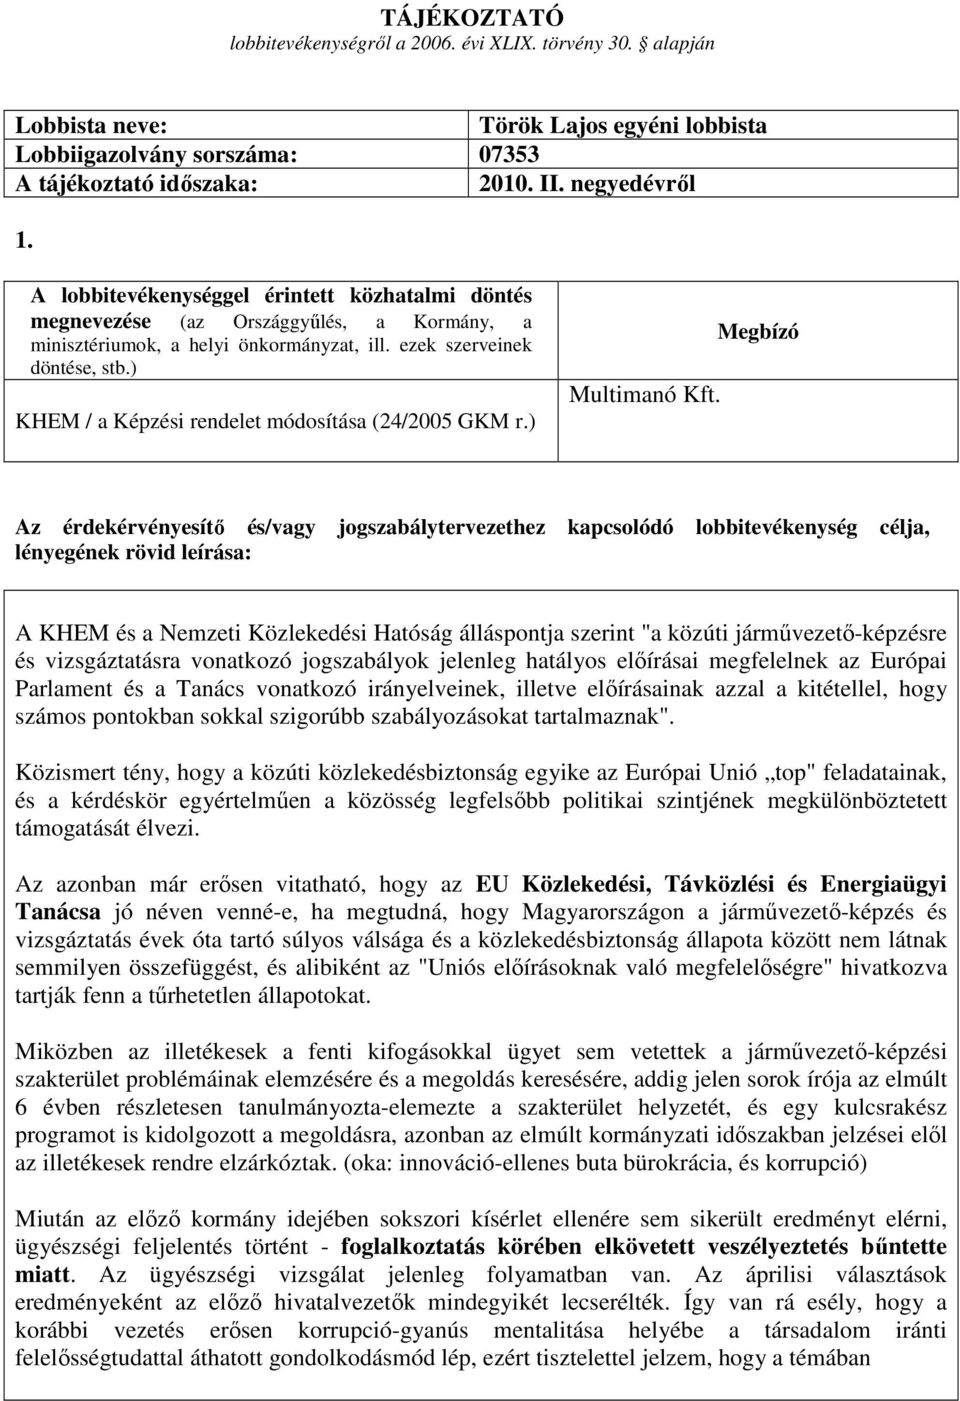 ) KHEM / a Képzési rendelet módosítása (24/2005 GKM r.) Multimanó Kft.